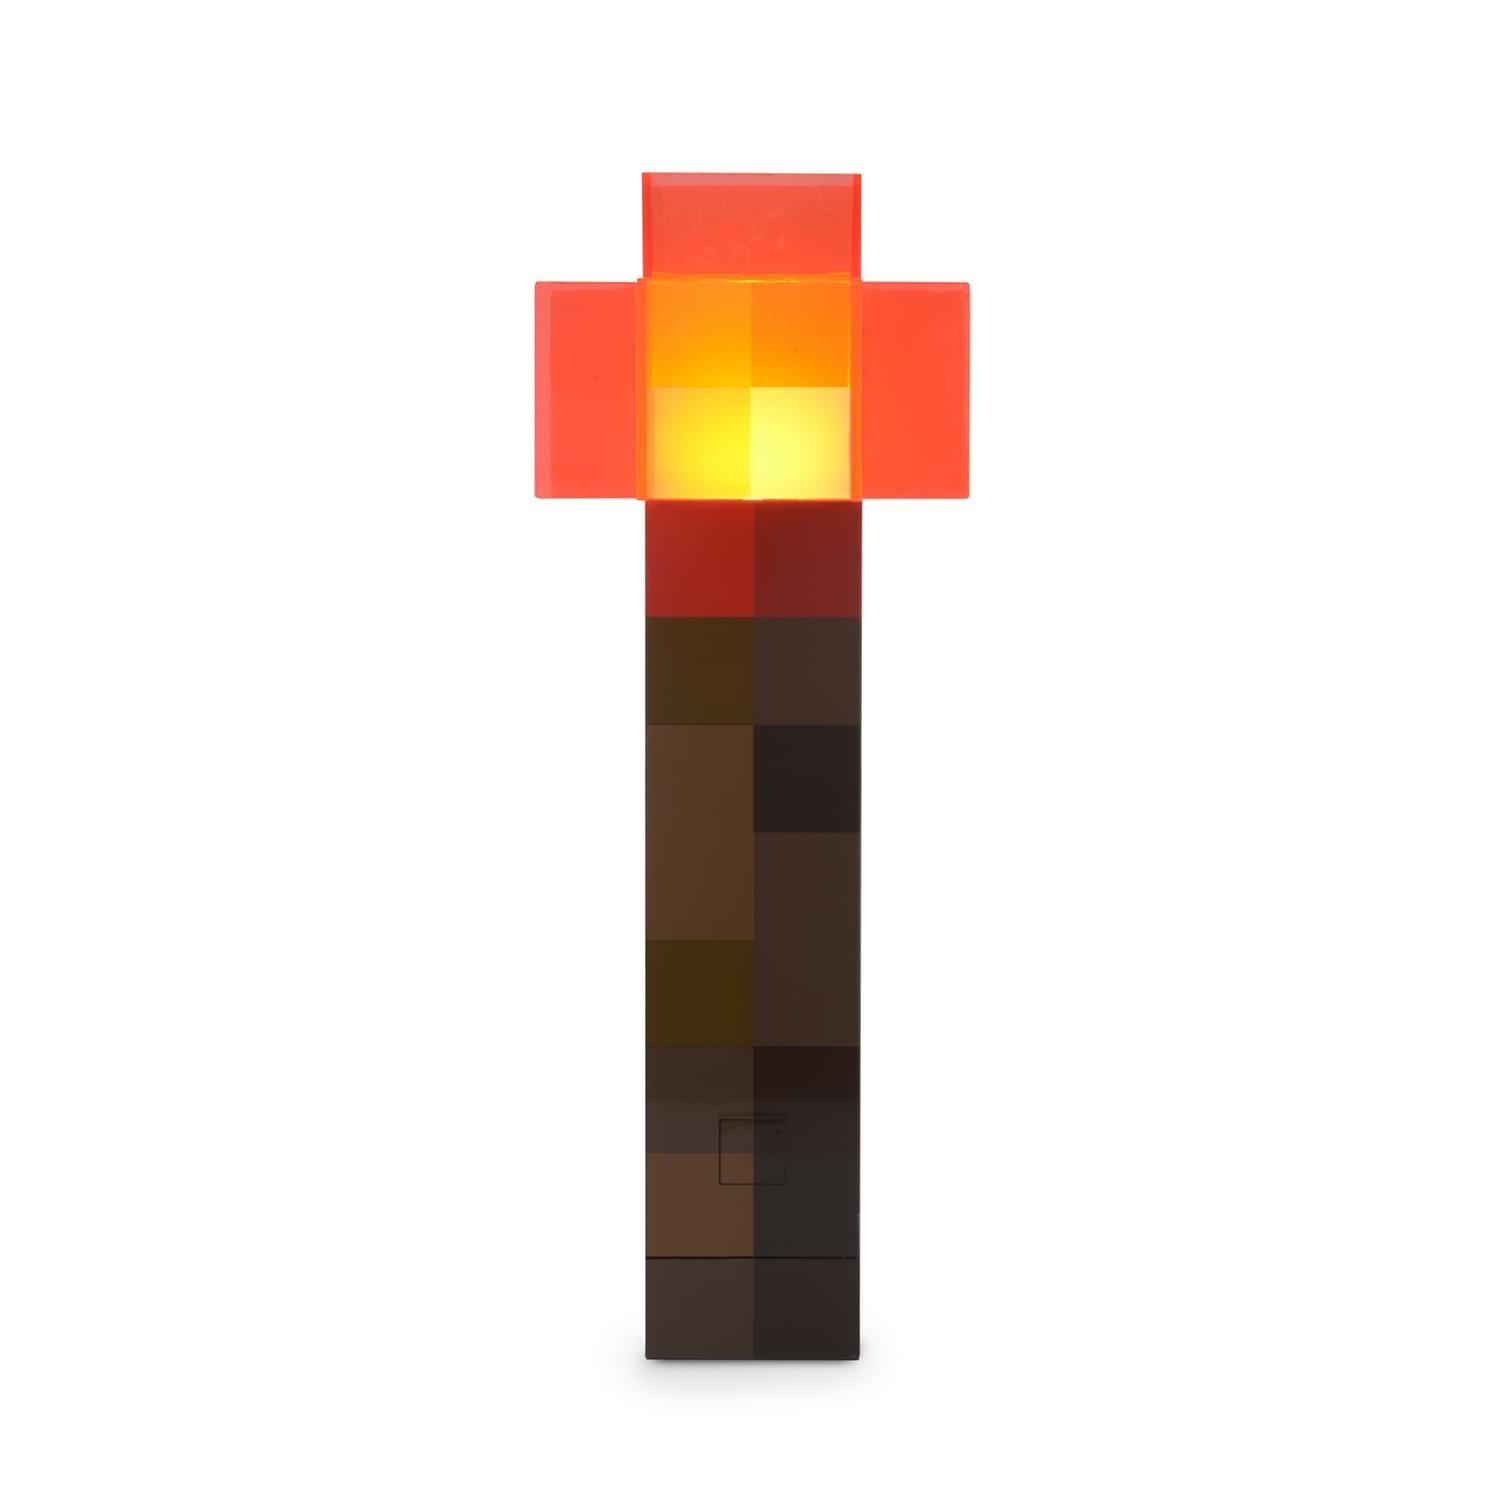 minecraft redstone torch